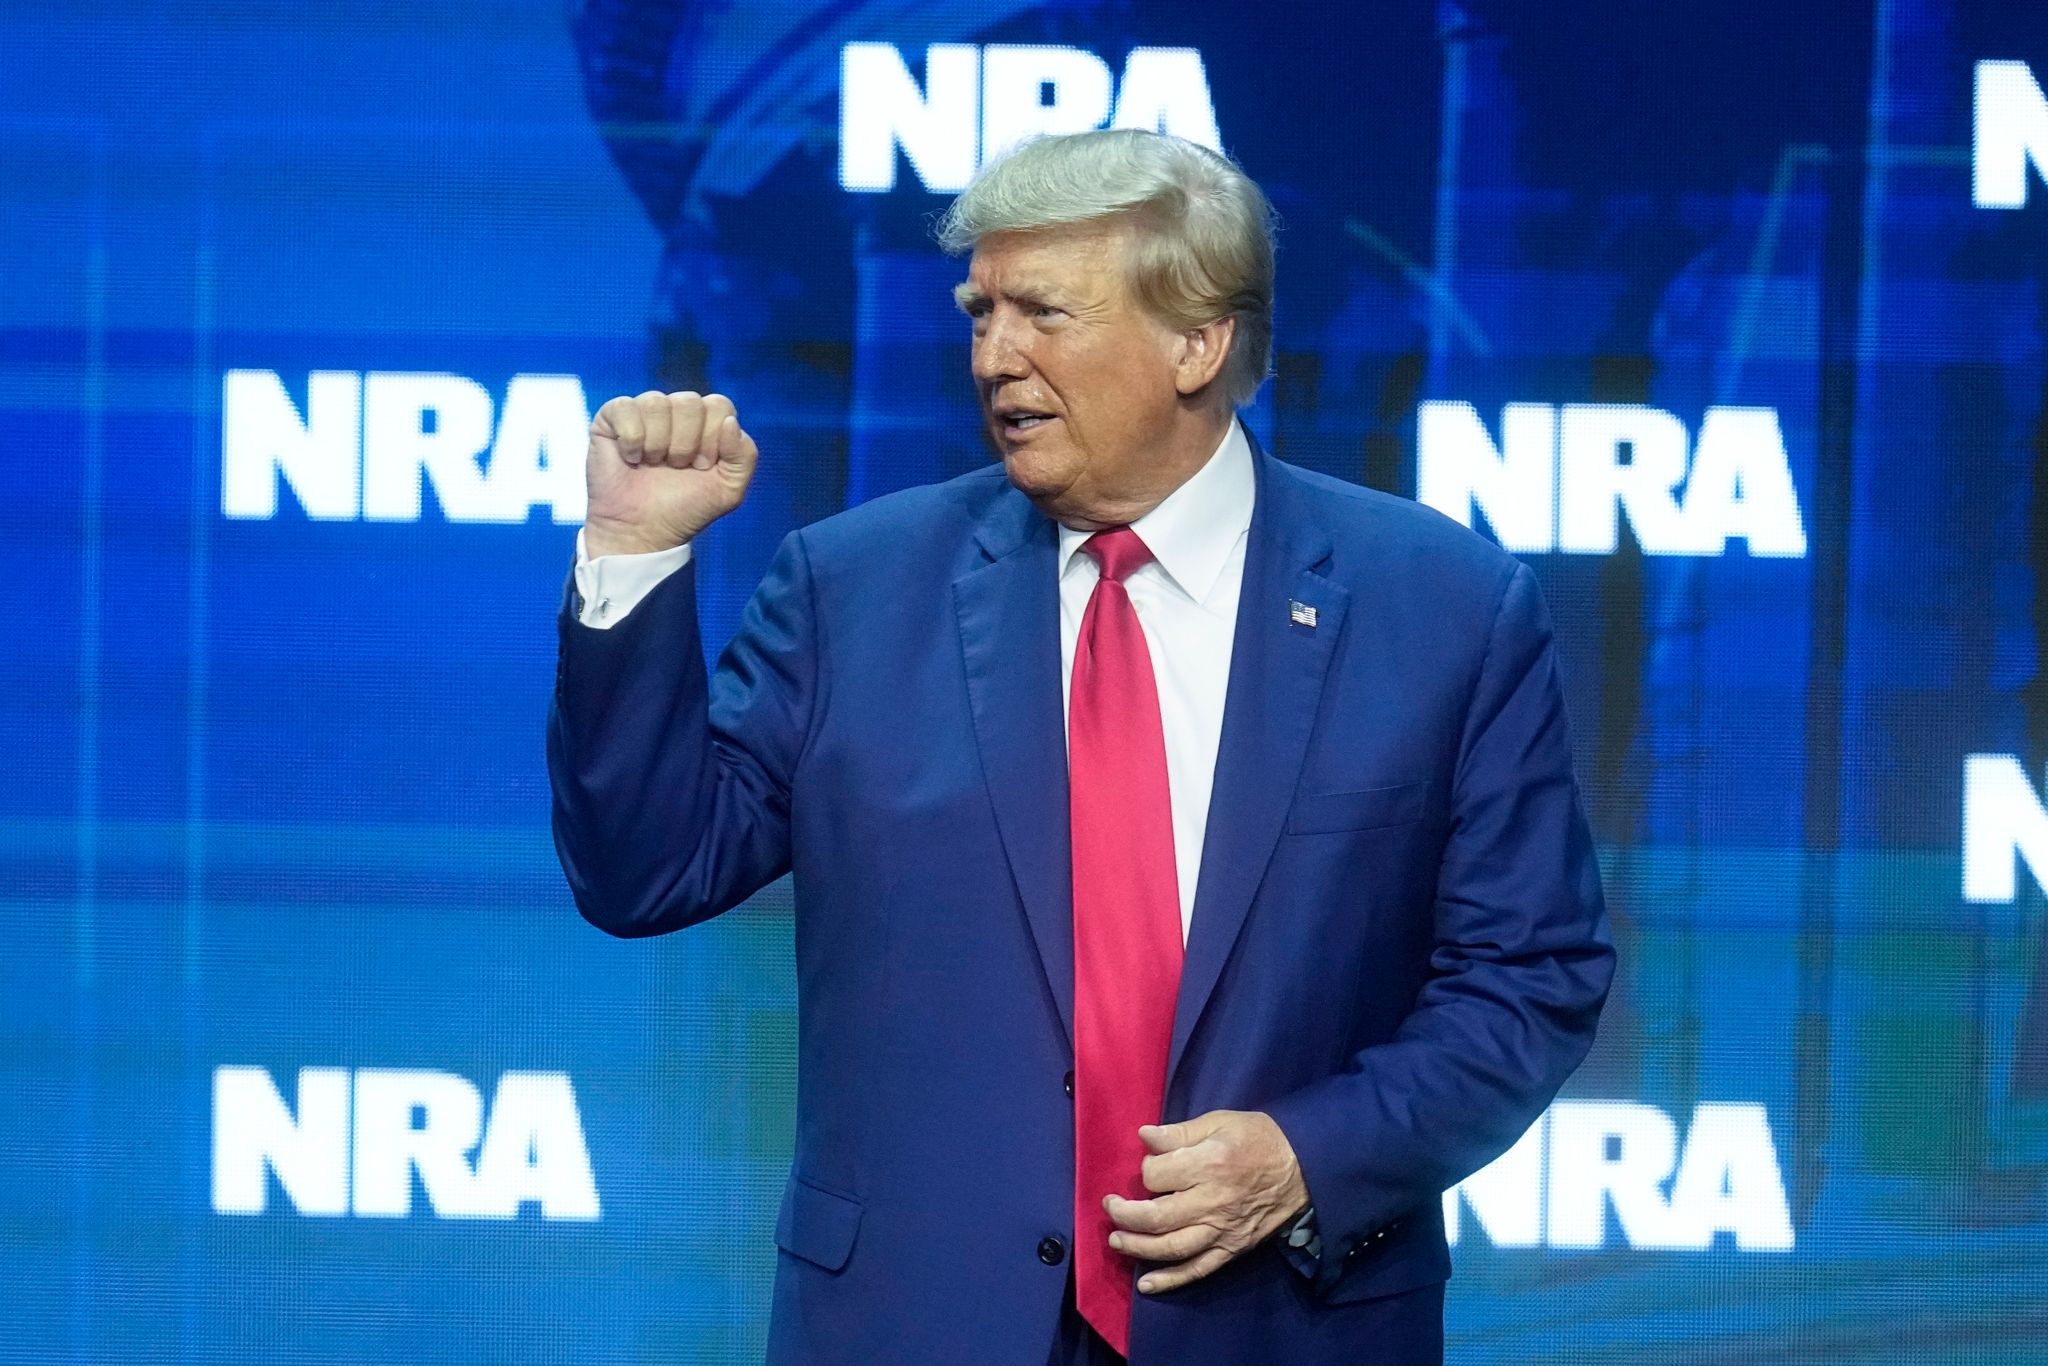 Mehr Waffen: Trump nutzt Waffenlobbytreffen für Wahlkampf